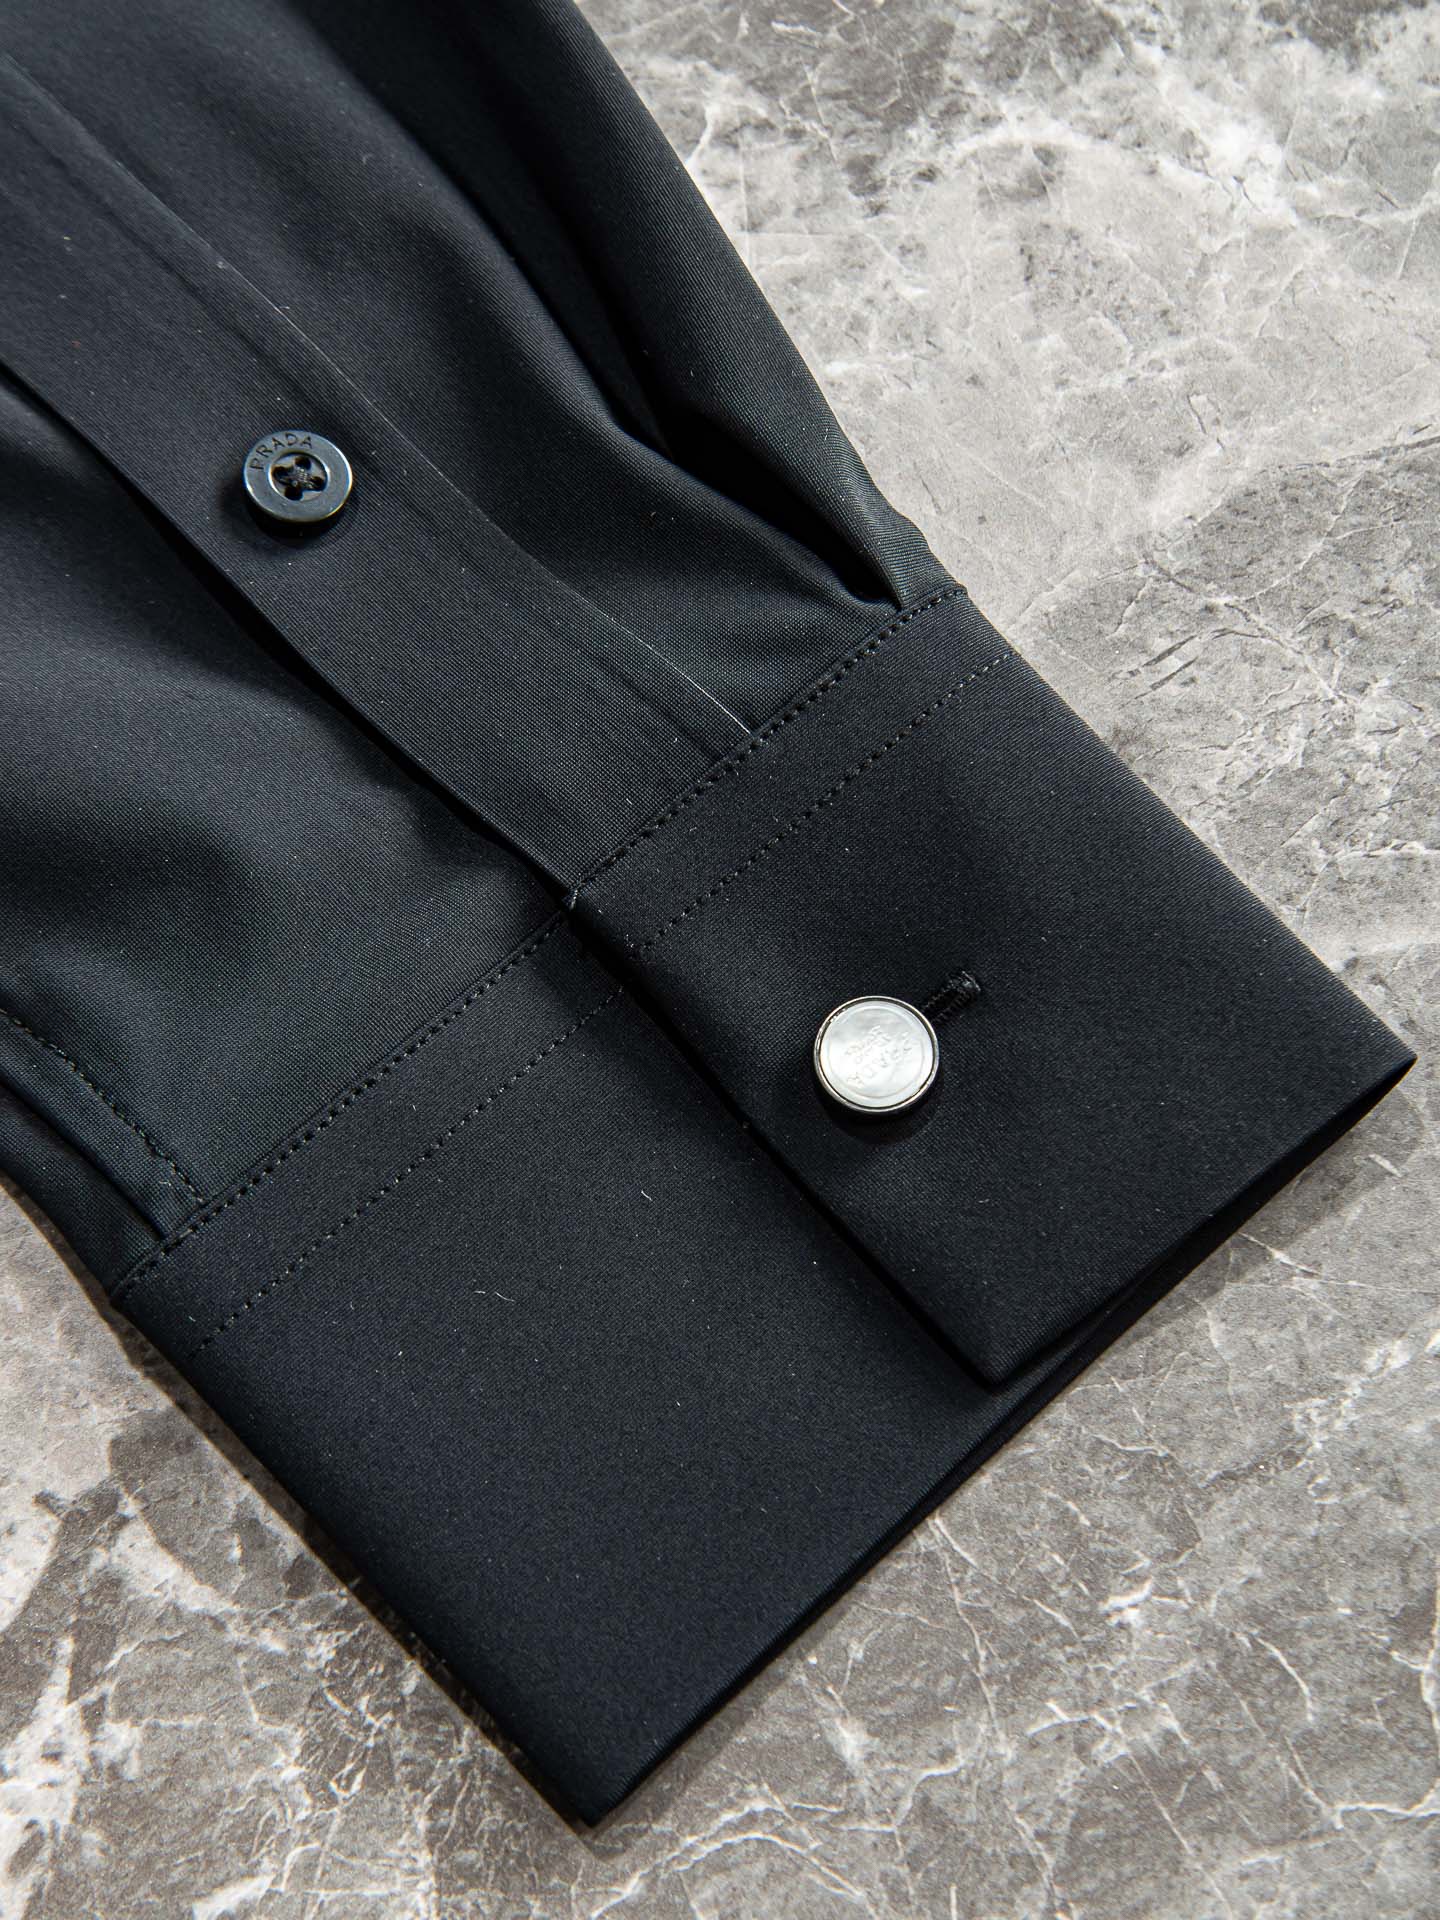 普*达 PR*DA 高品质的珍藏级进口高织棉男士长袖衬衫